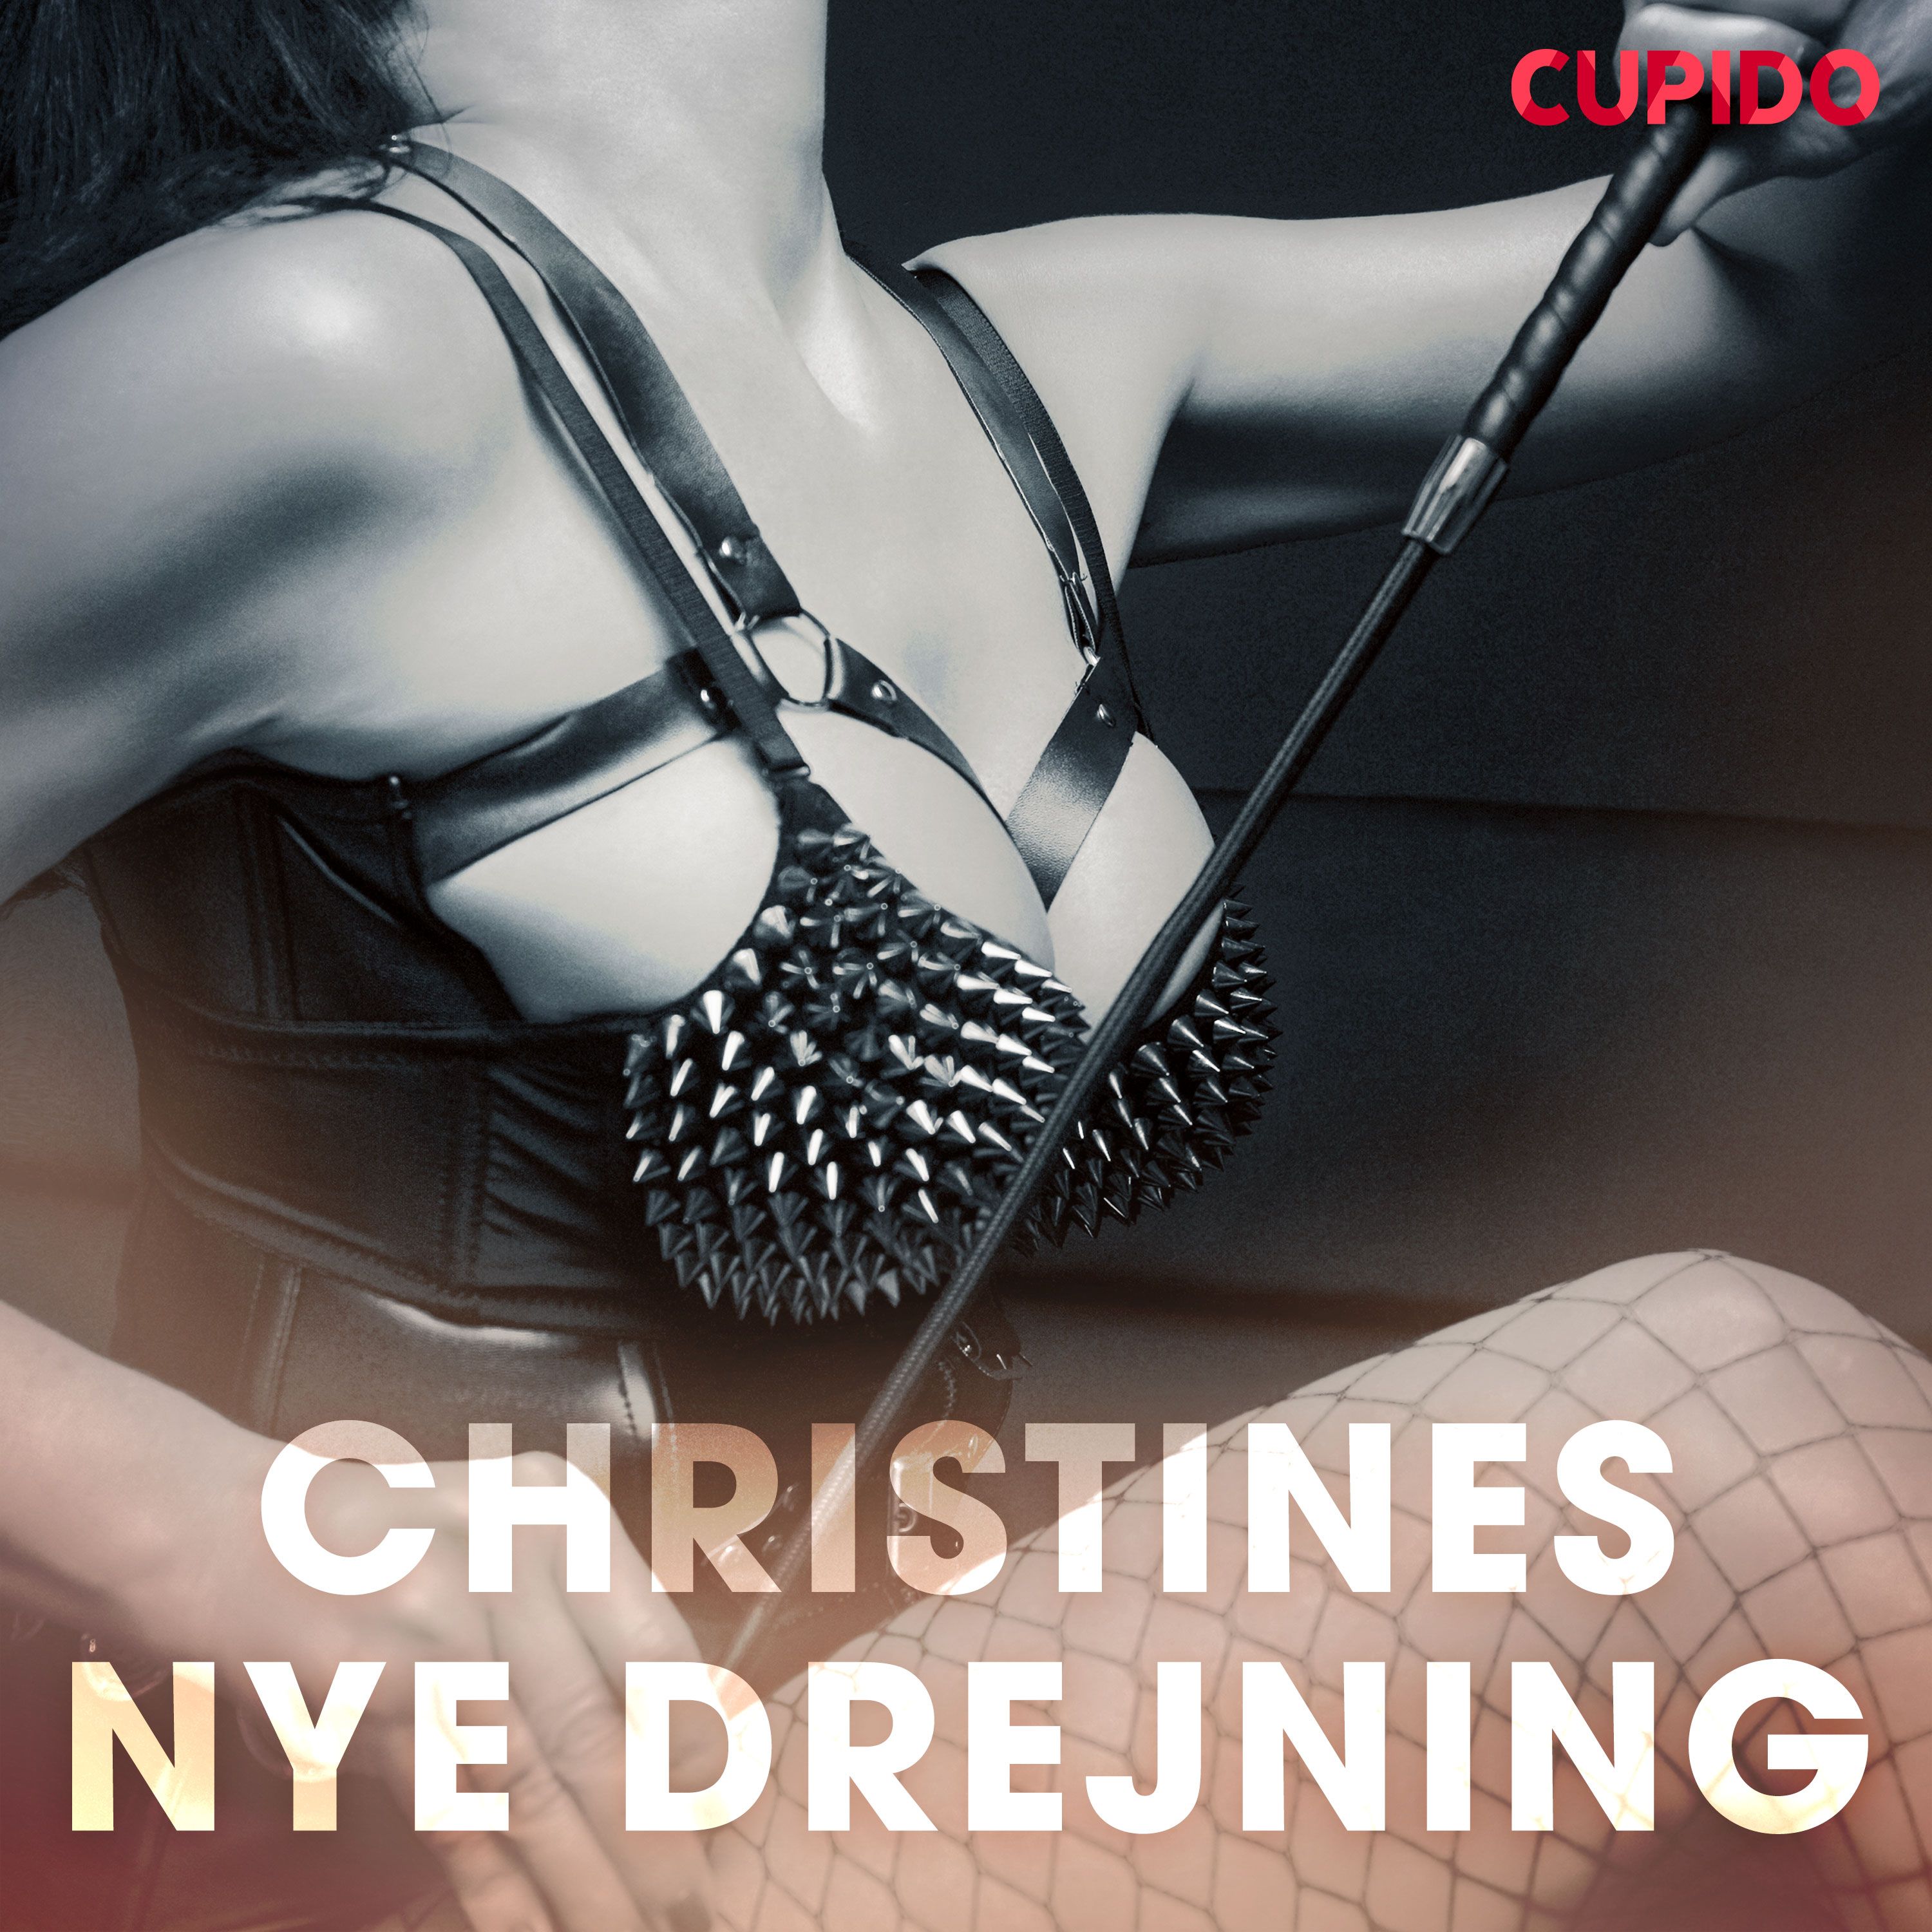 Christines nye drejning, lydbog af Cupido